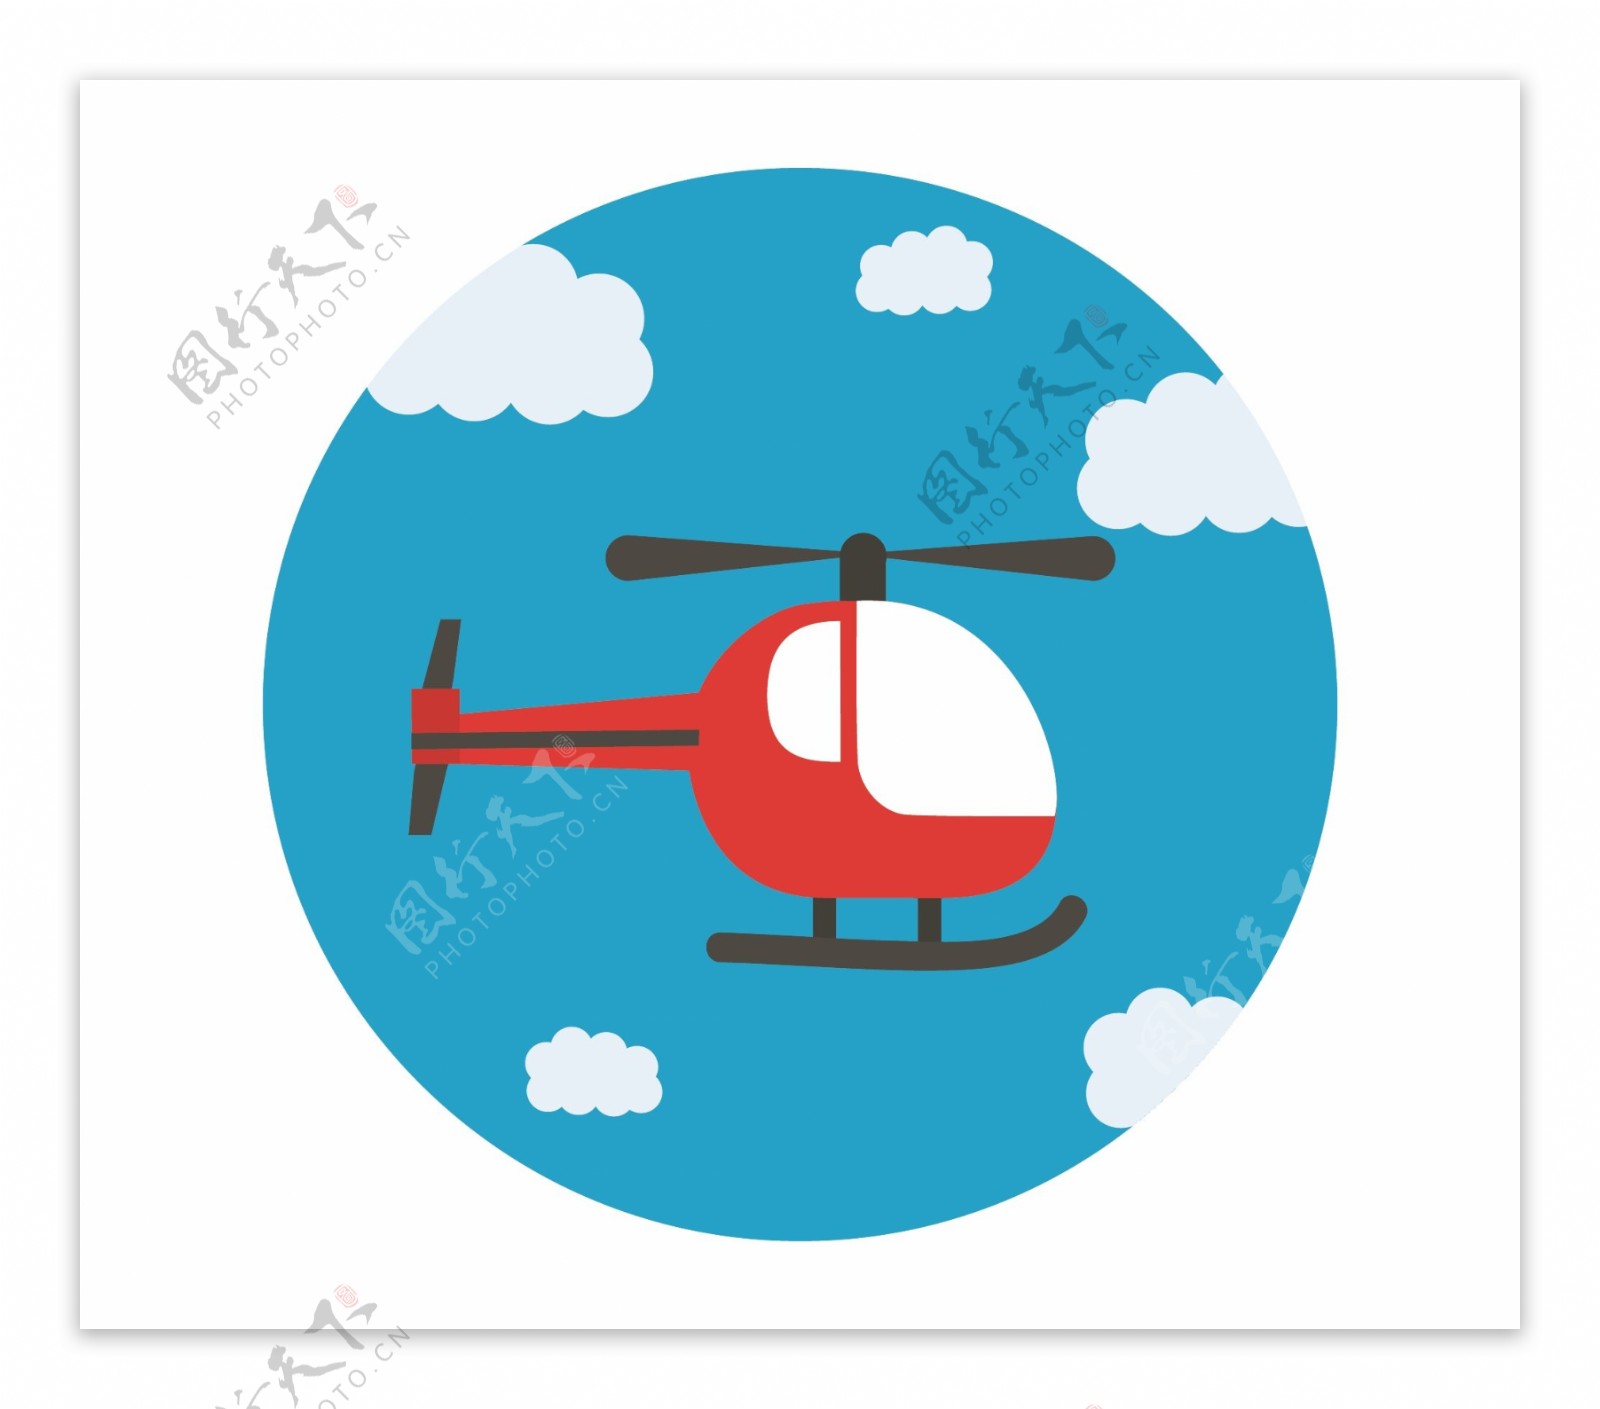 圆形直升机矢量素材